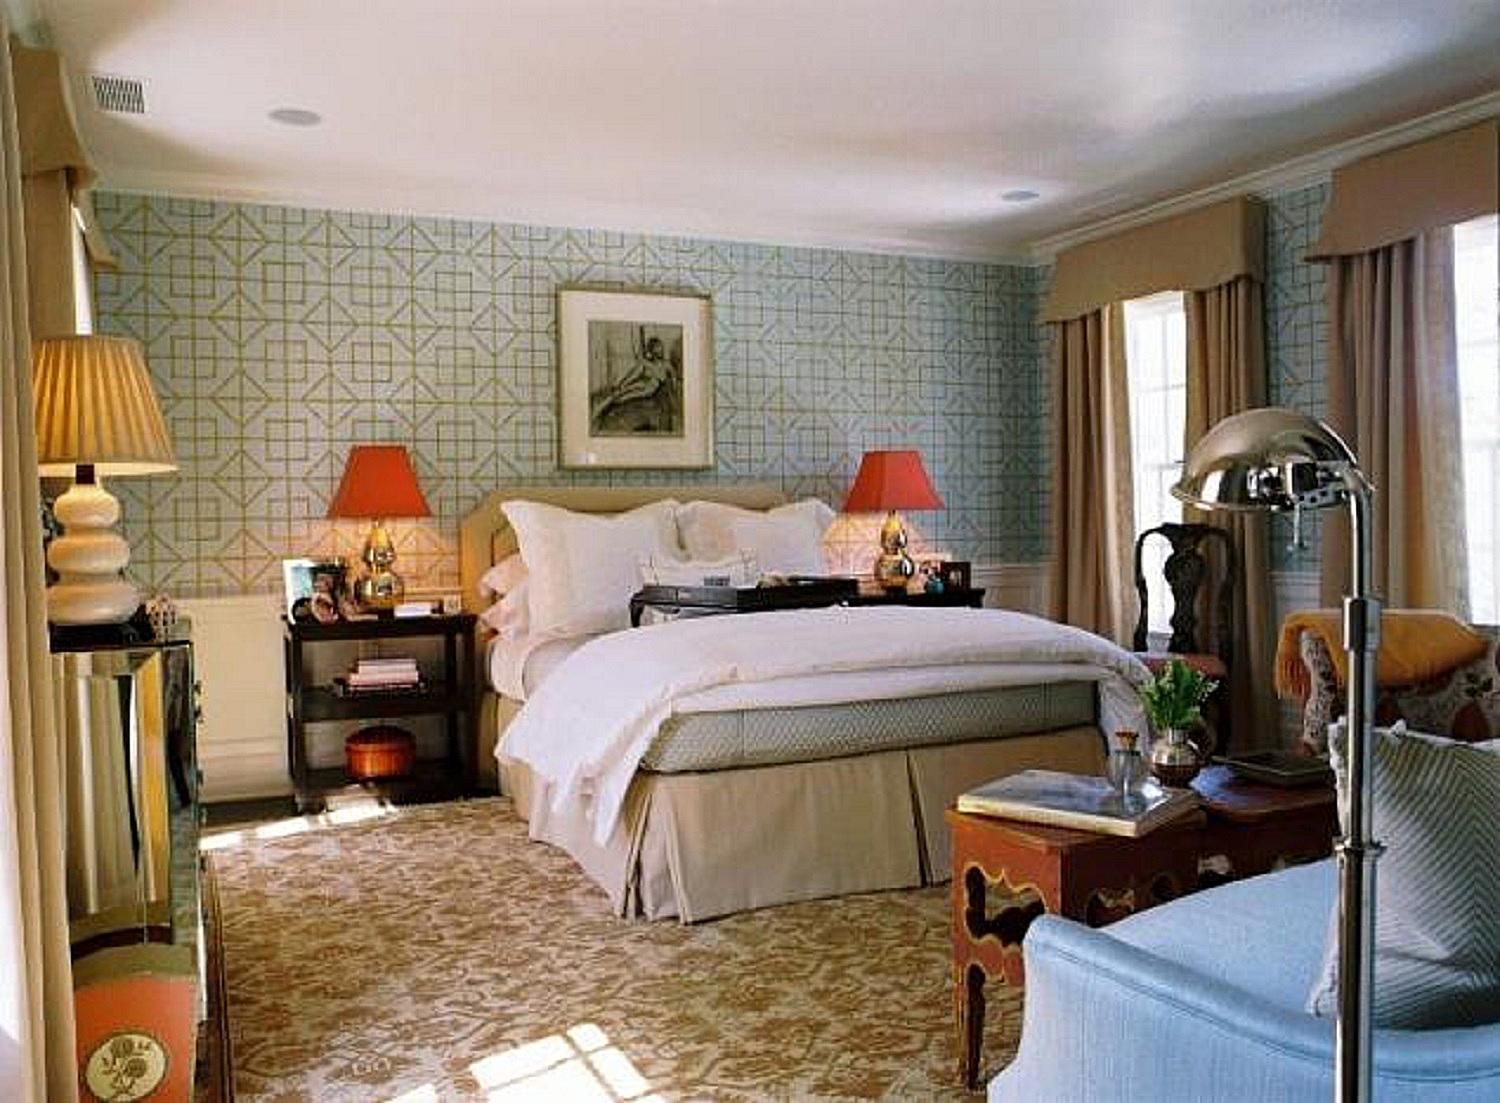 wallpaper design for bedroom,bedroom,room,furniture,bed,property